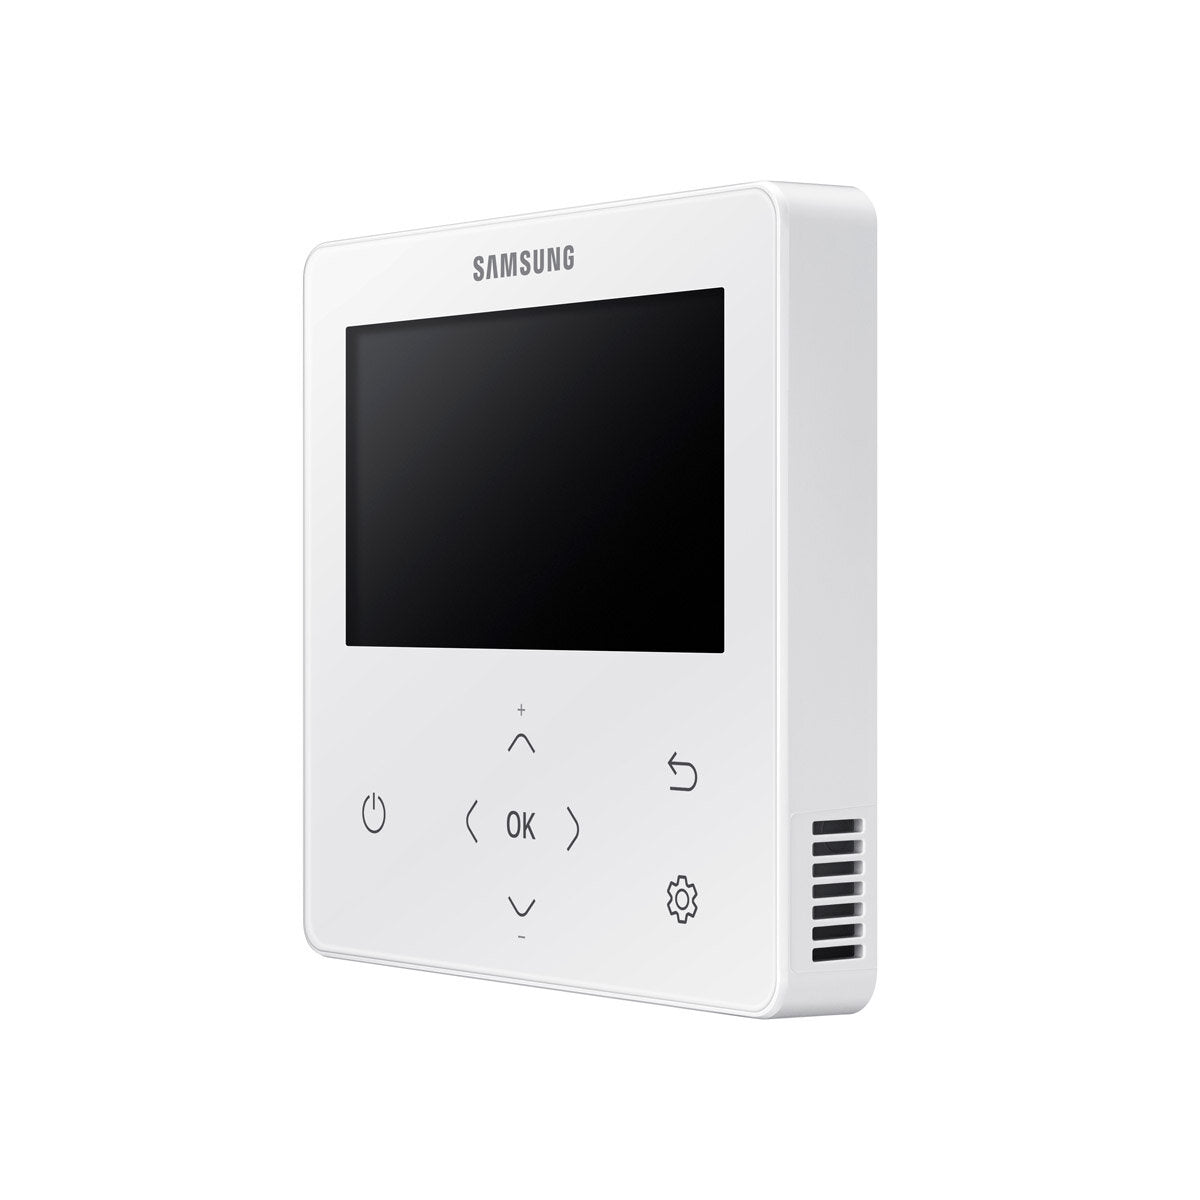 Samsung Air Conditioner WindFree Cassette 1 Way penta split 9000 + 9000 + 9000 + 12000 + 12000 BTU inverter A ++ outdoor unit 10.0 kW